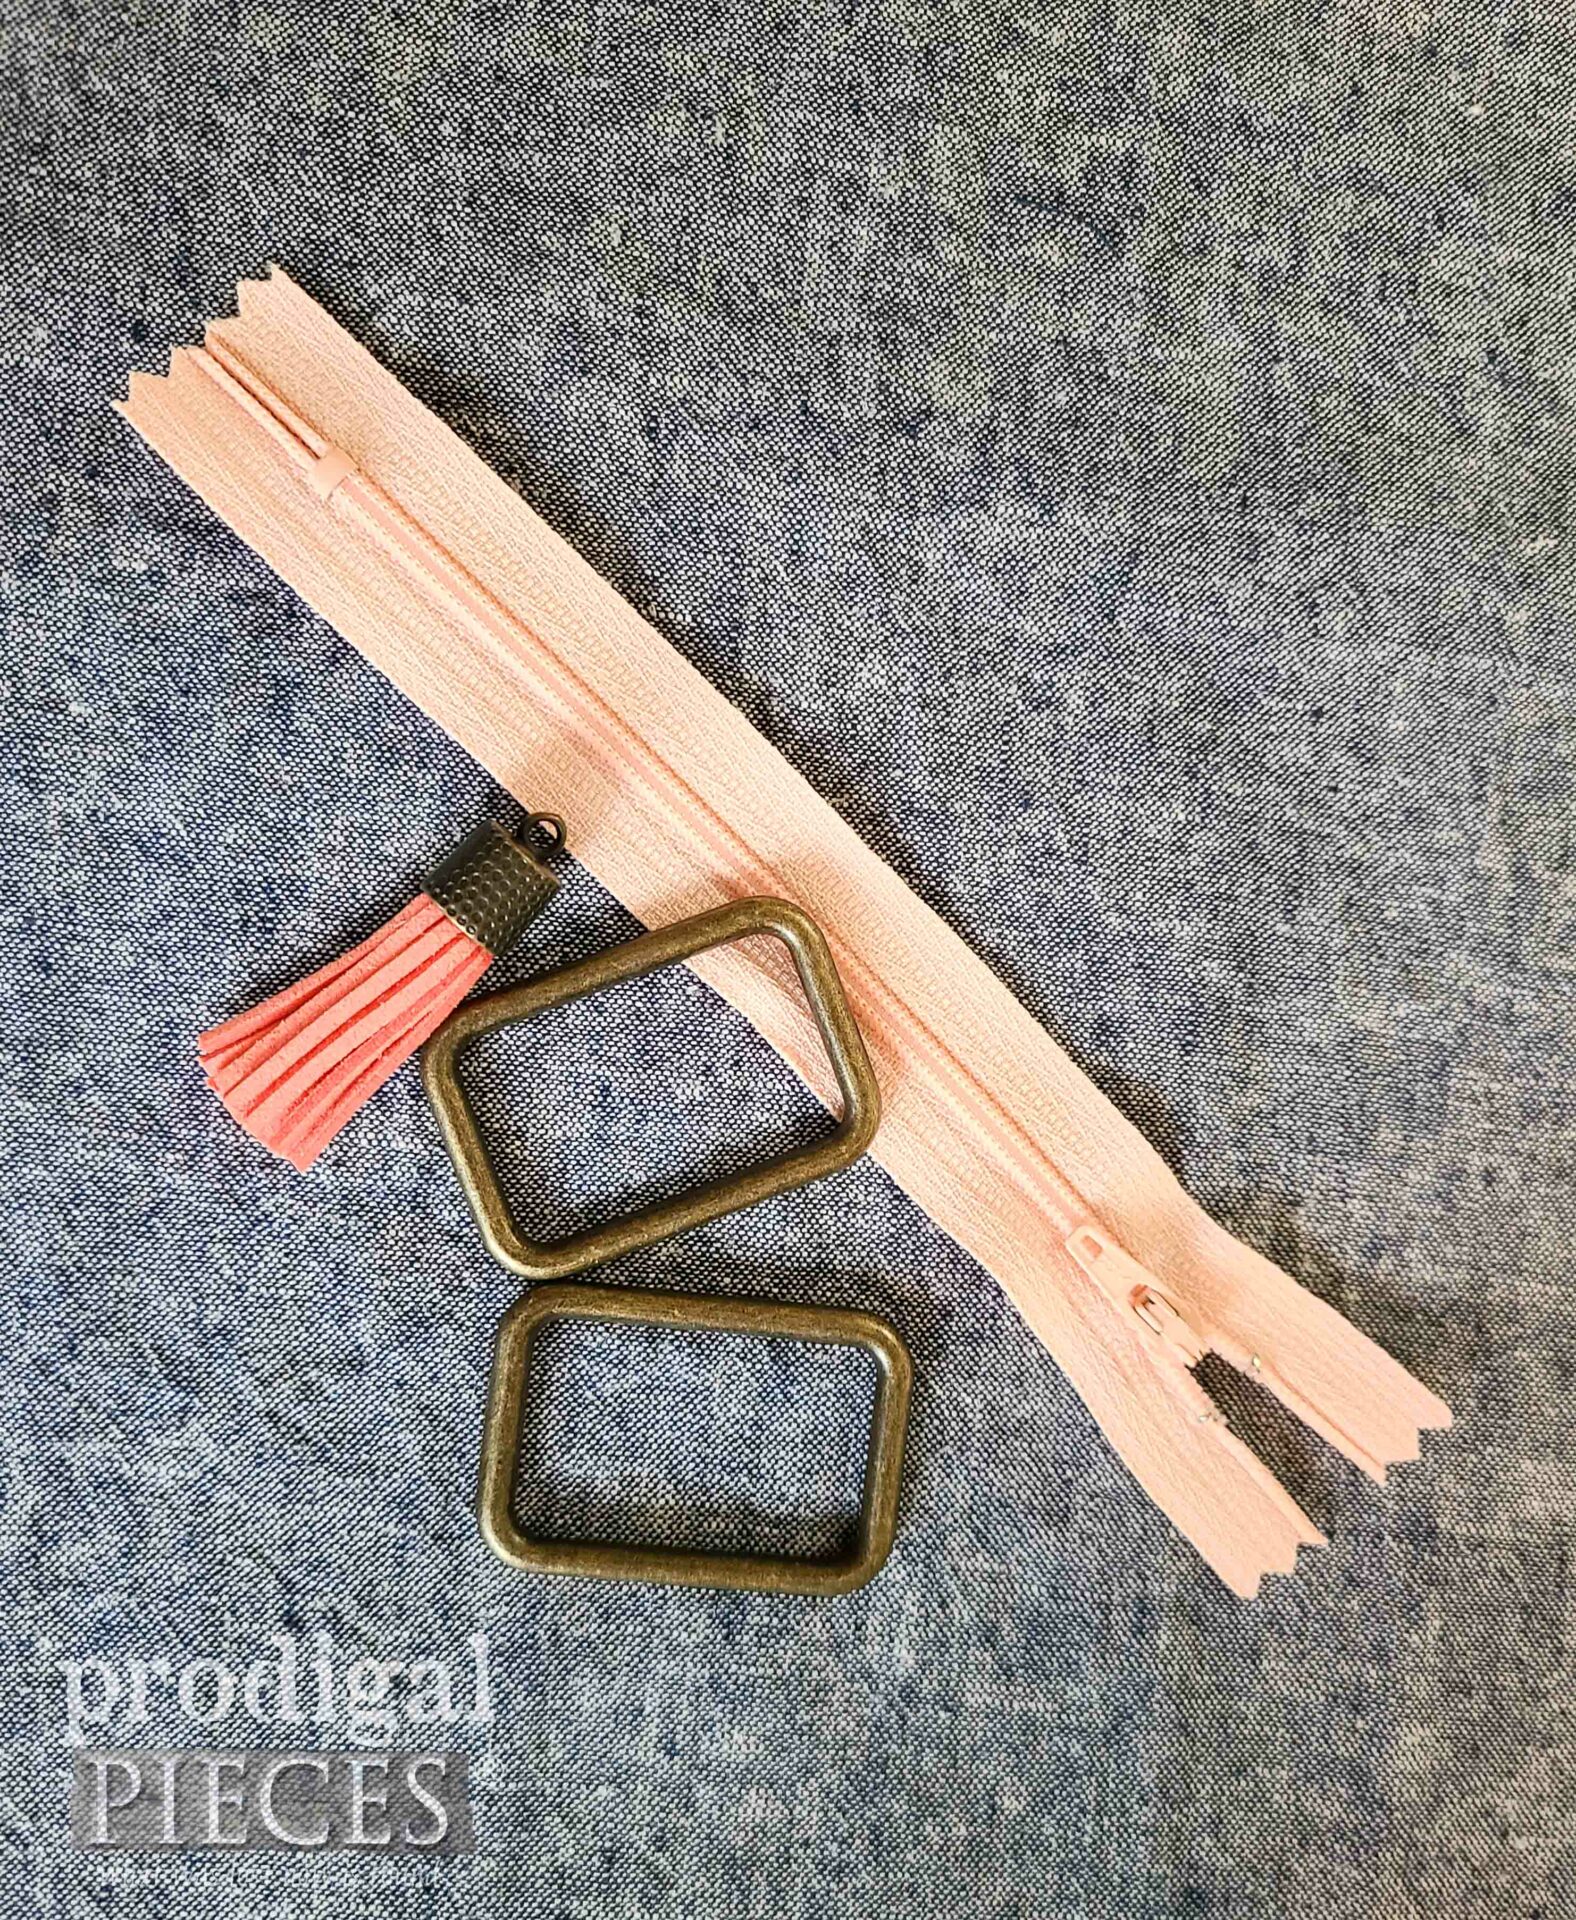 Notions for DIY Boho Bag | prodigalpieces.com #prodigalpieces